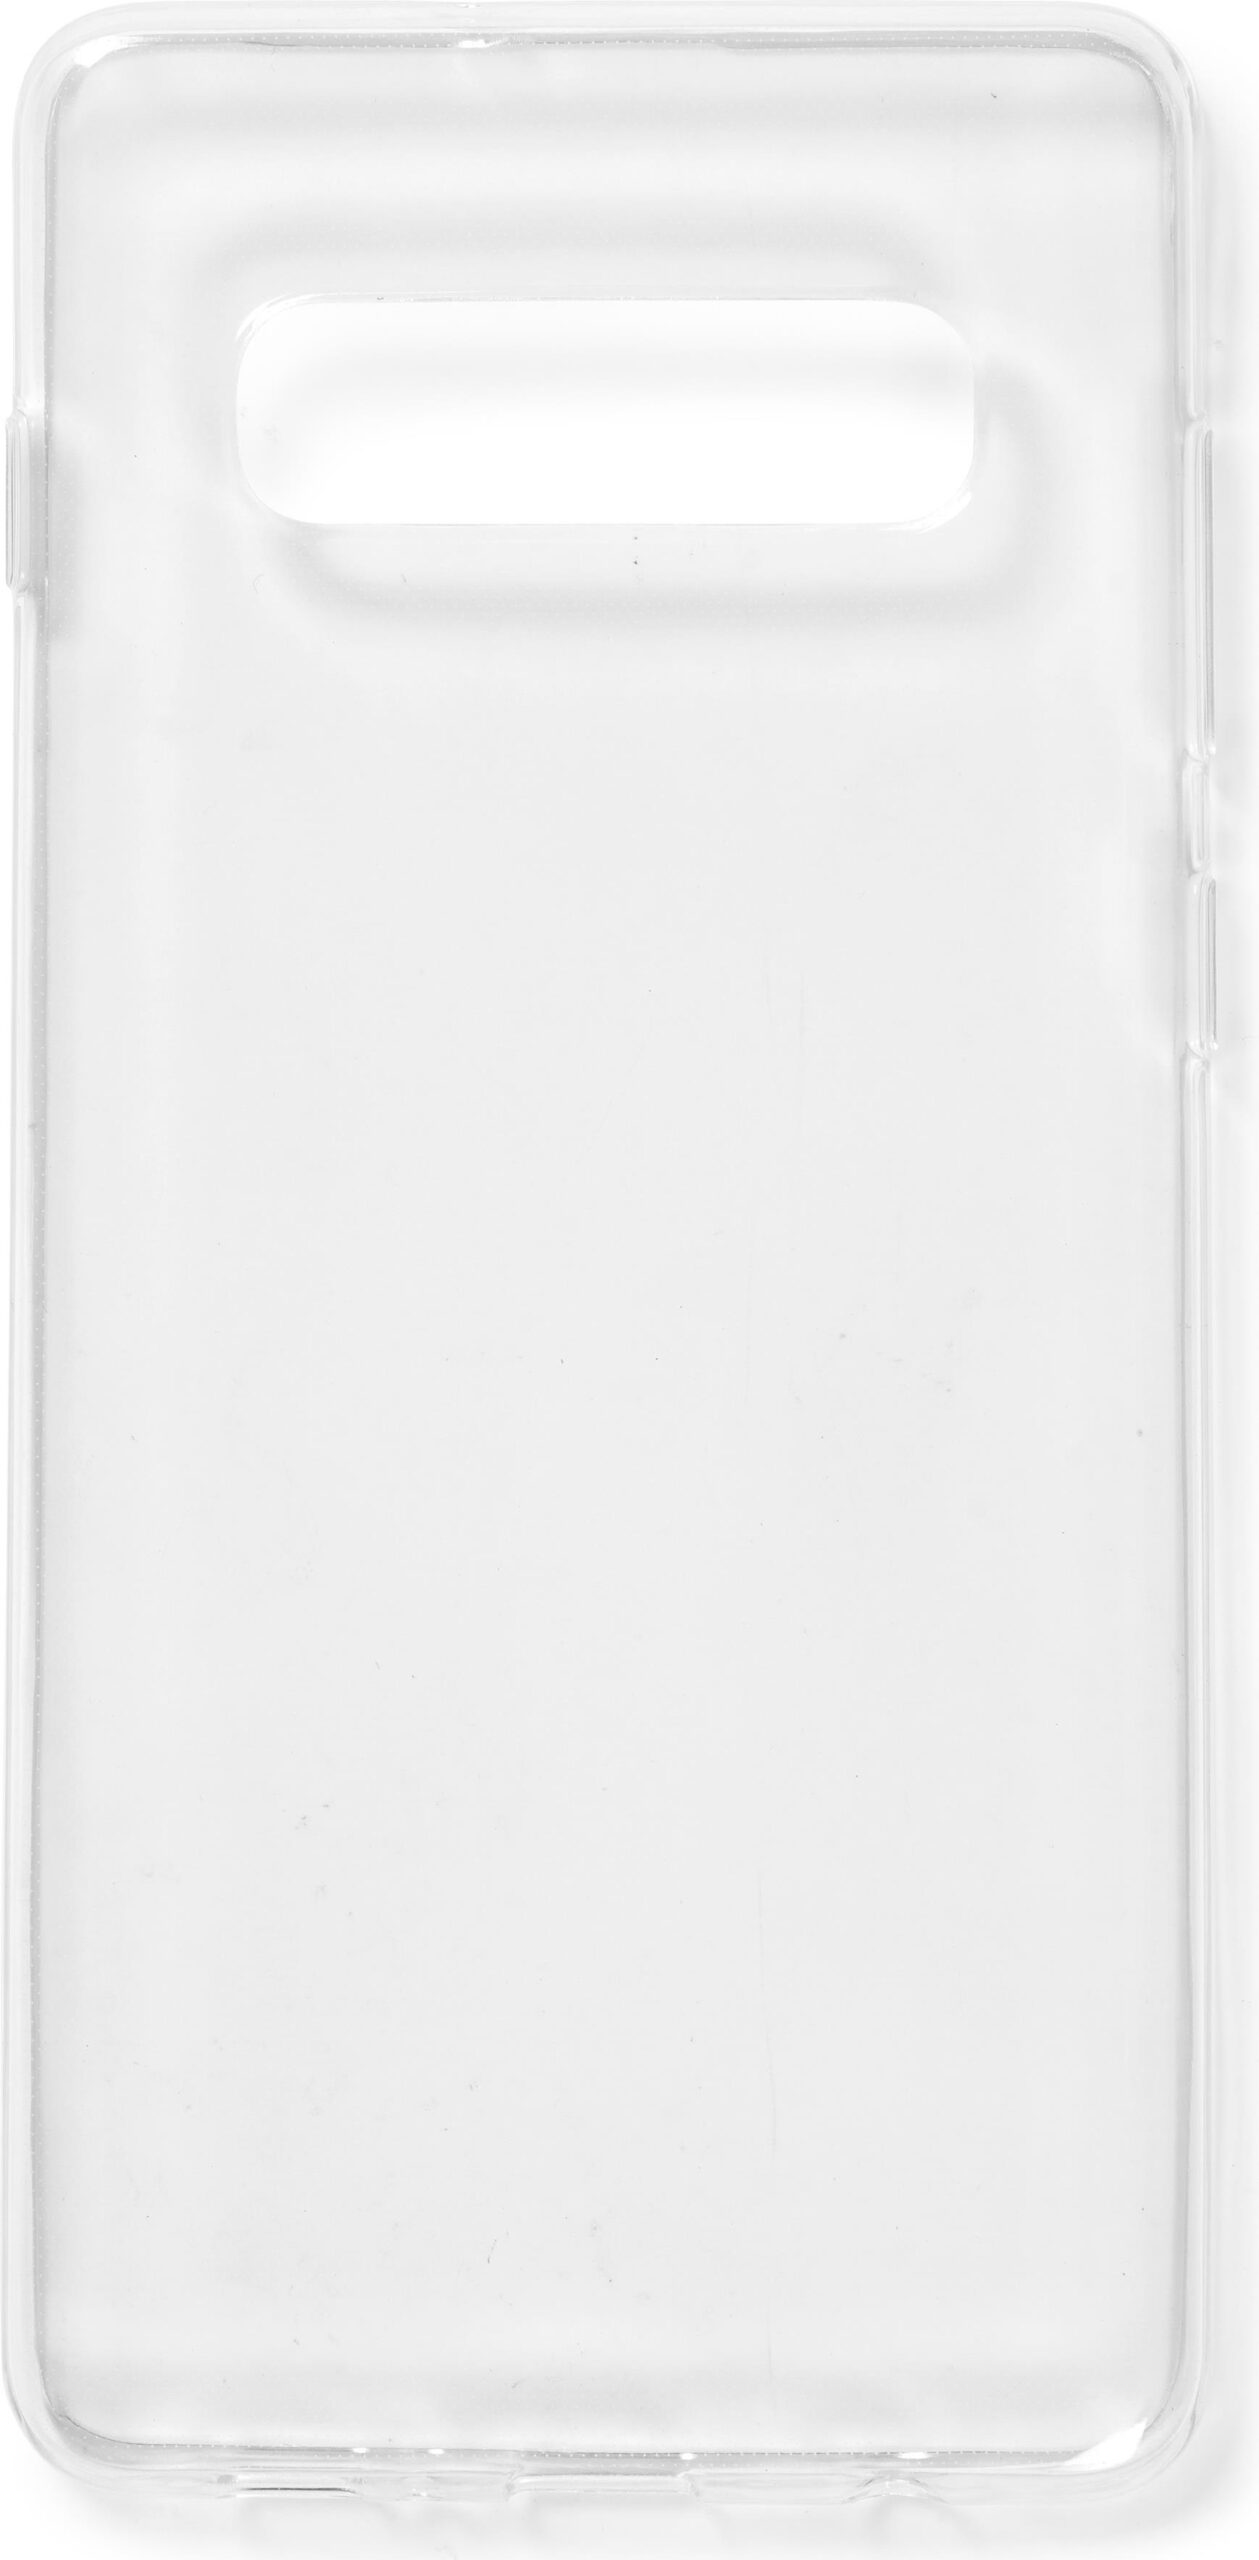 eSTUFF – Hintere Abdeckung für Mobiltelefon – UV-beschichtetes, verformbares Polyurethan – durchsichtig – für Samsung Galaxy S10+